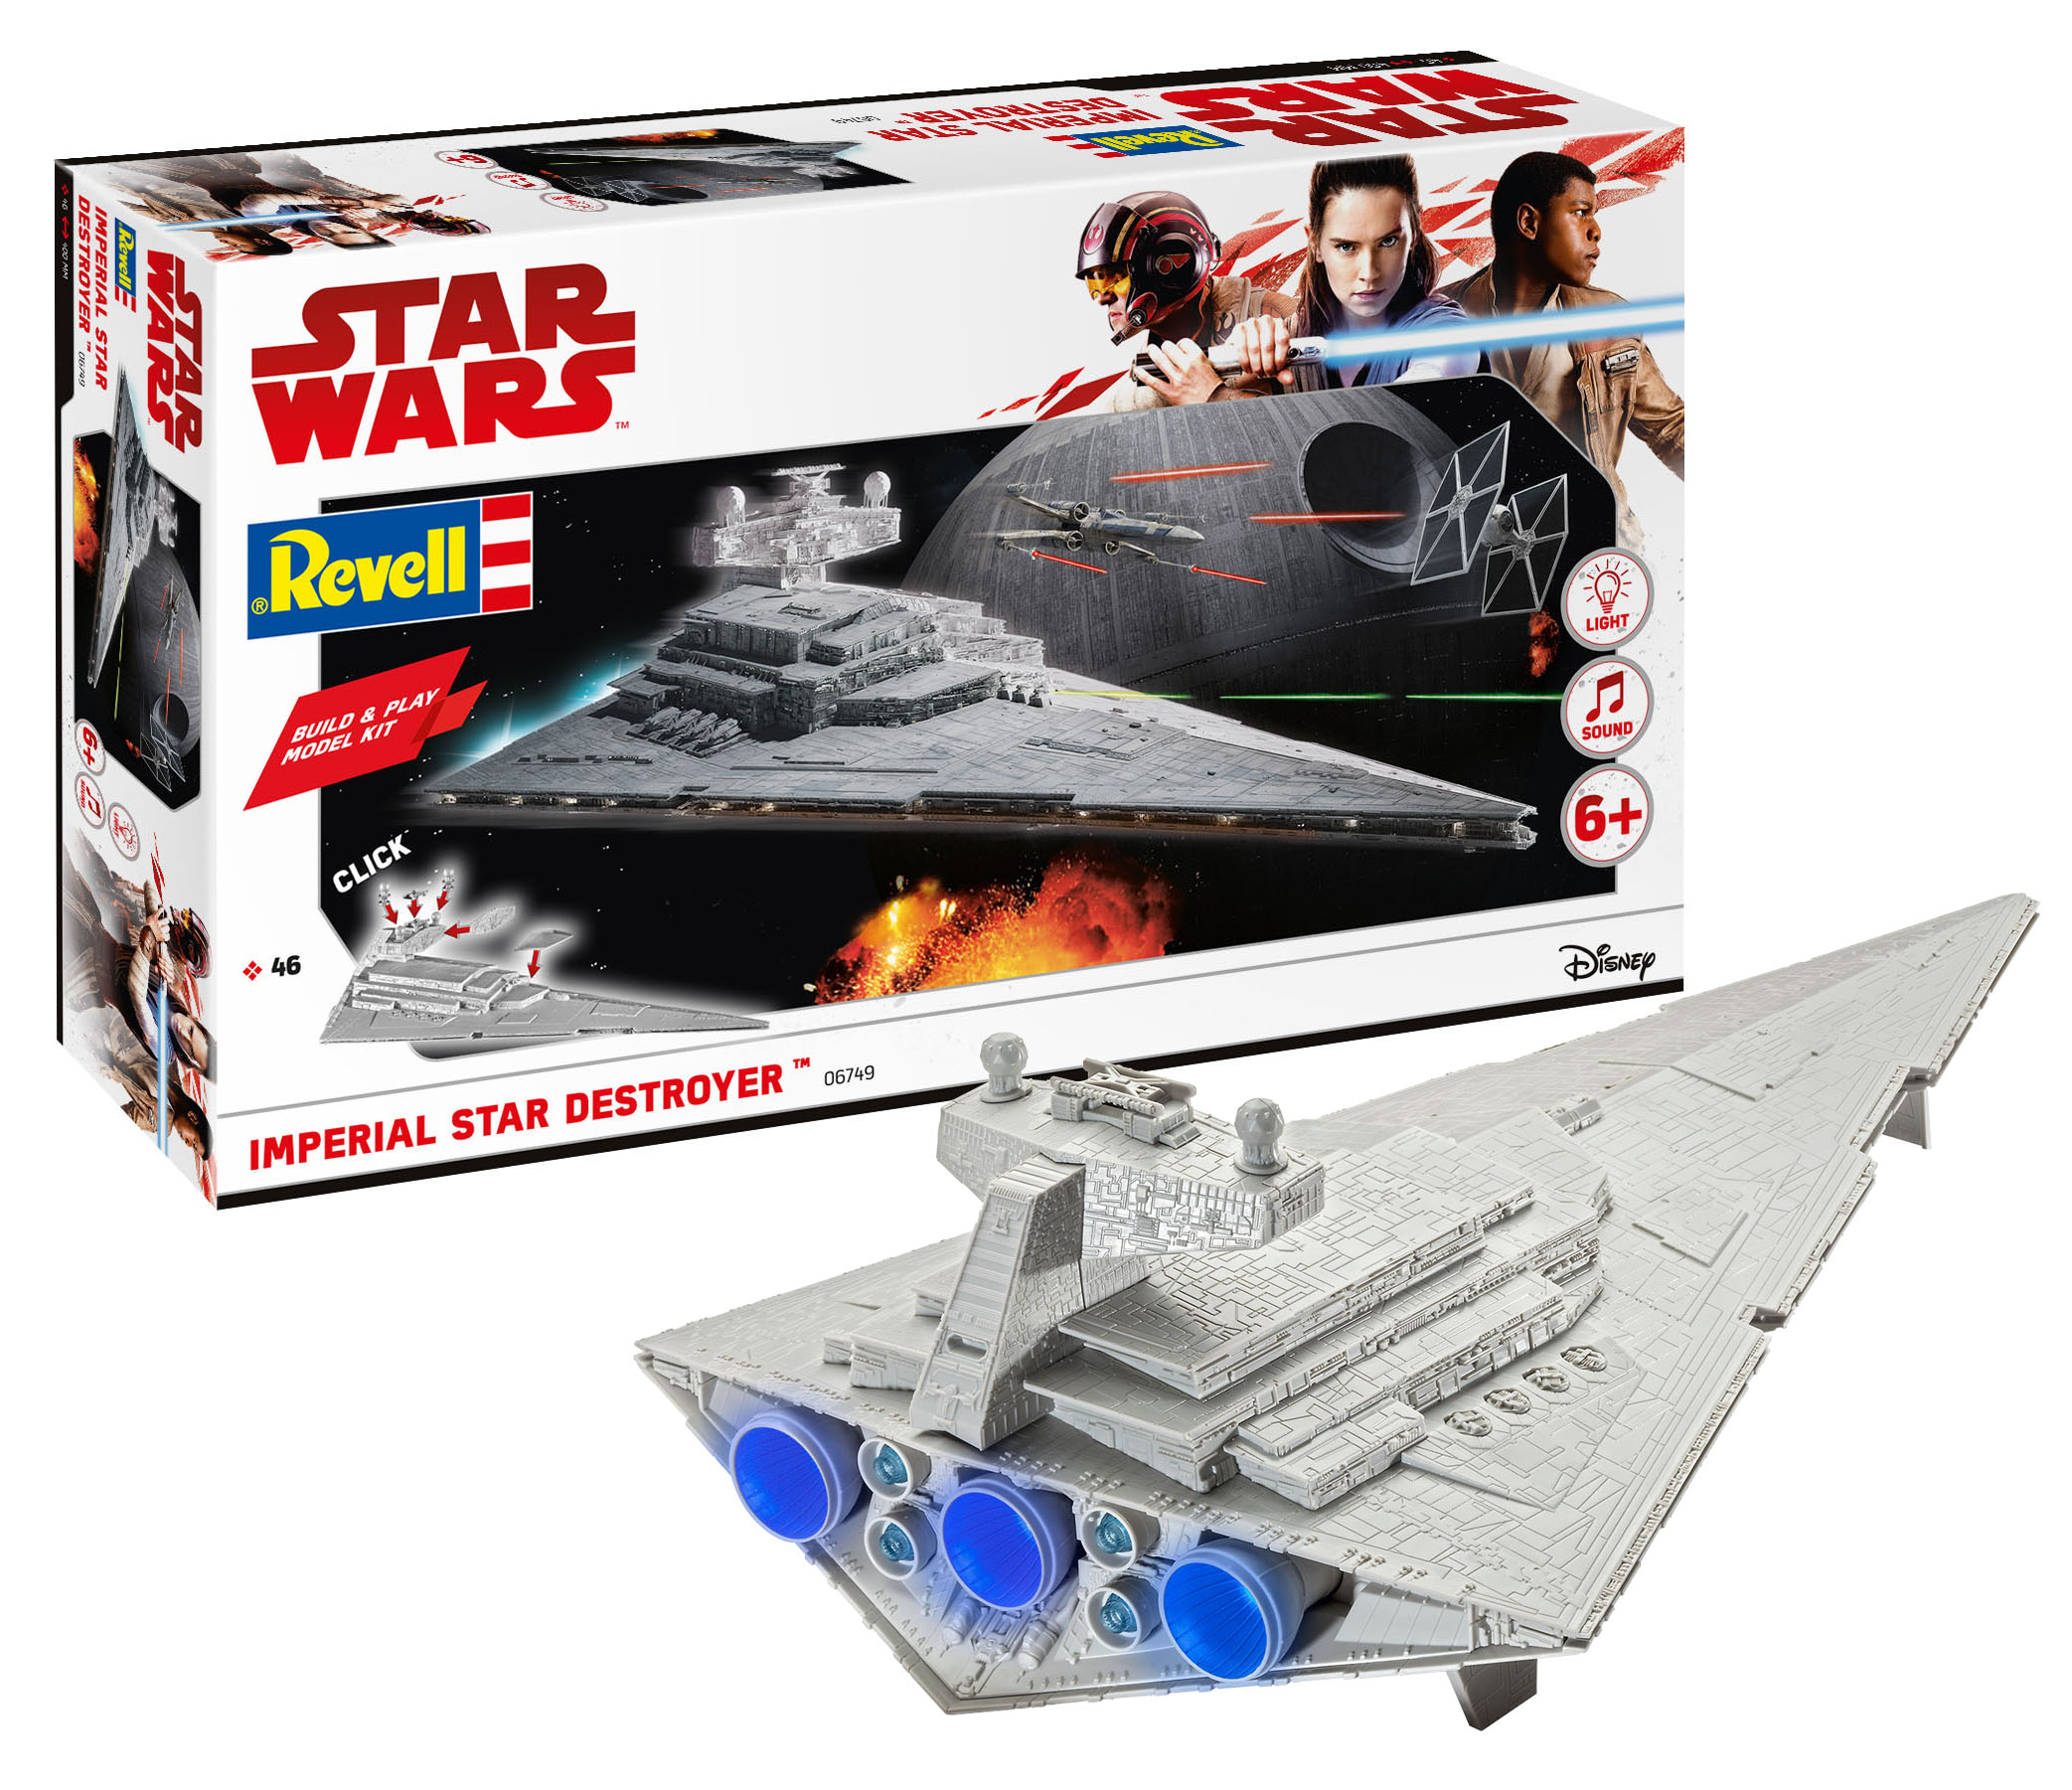 Star Wars Rogue One Set Imperial Destroyer Model Set 